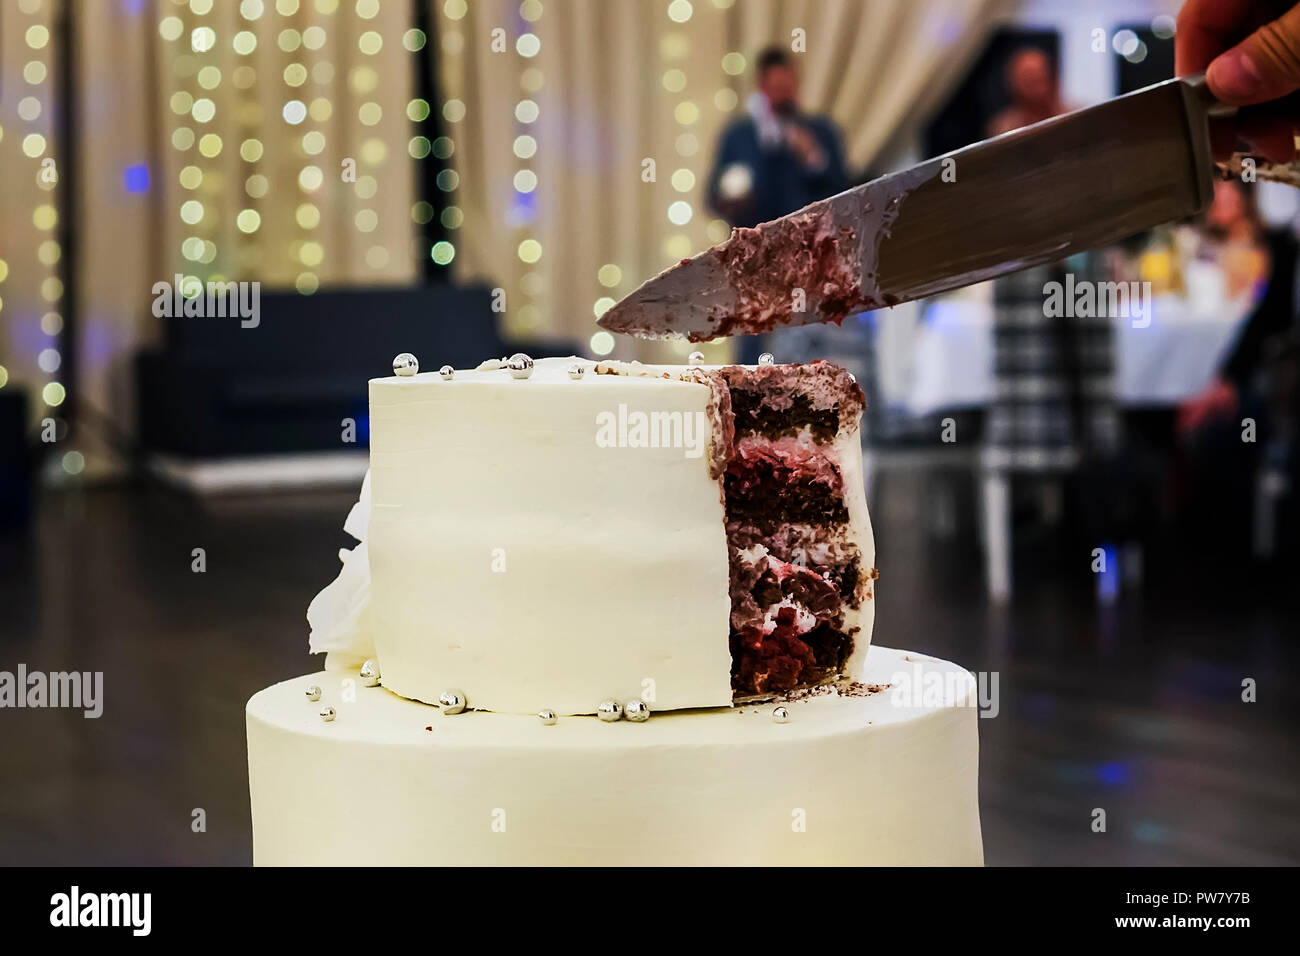 Die erste Stufe einer weißer Dichtmasse Hochzeitstorte in einem Bankettsaal Hintergrund. Hochzeit Kuchen schneiden Sweet Moment. Hochzeit Traditionen. Kuchen art gmbh Stockfoto